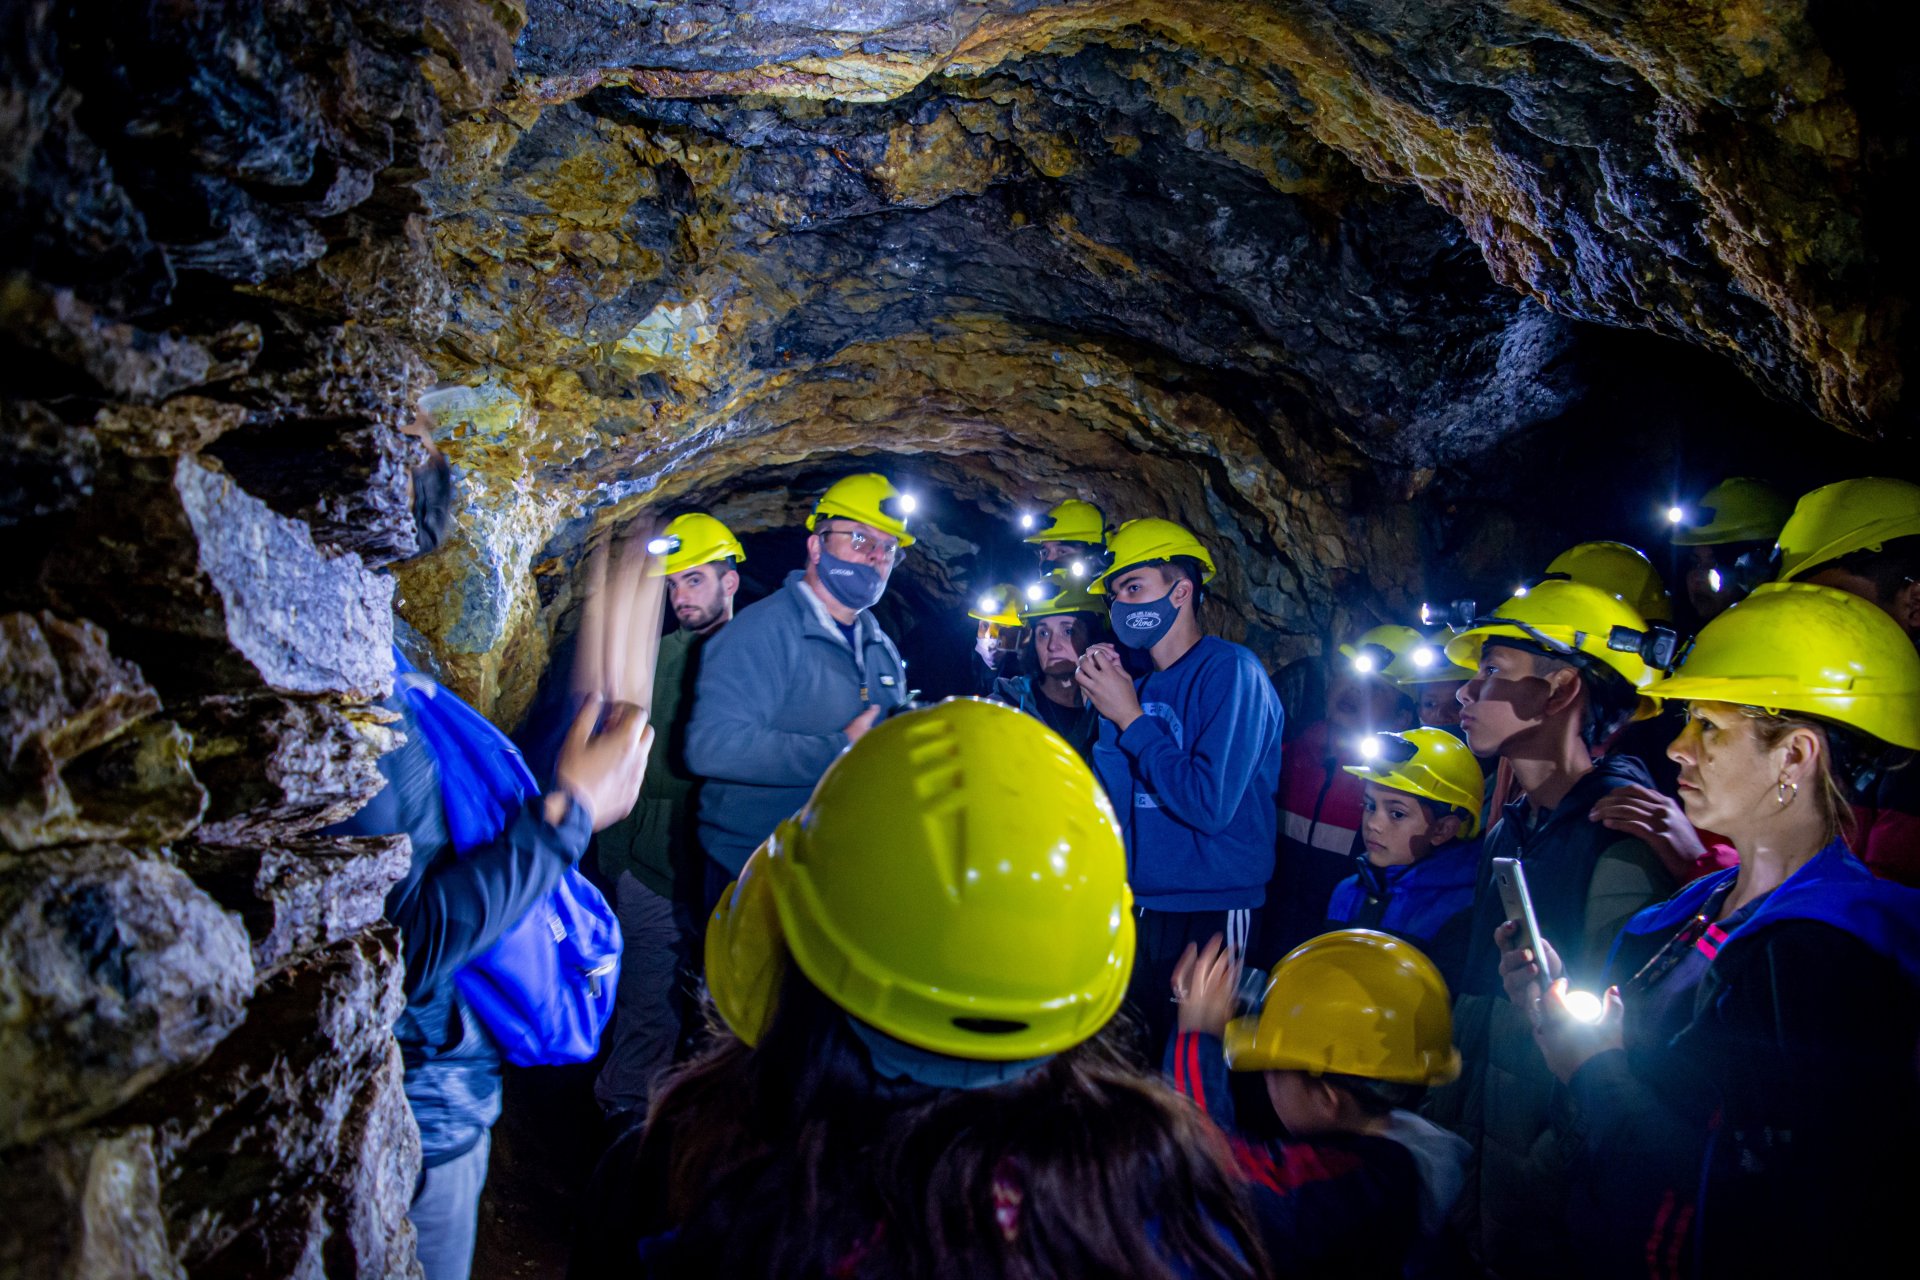 El turismo minero propone disfrutar de paisajes, experiencias e historias de San Luis